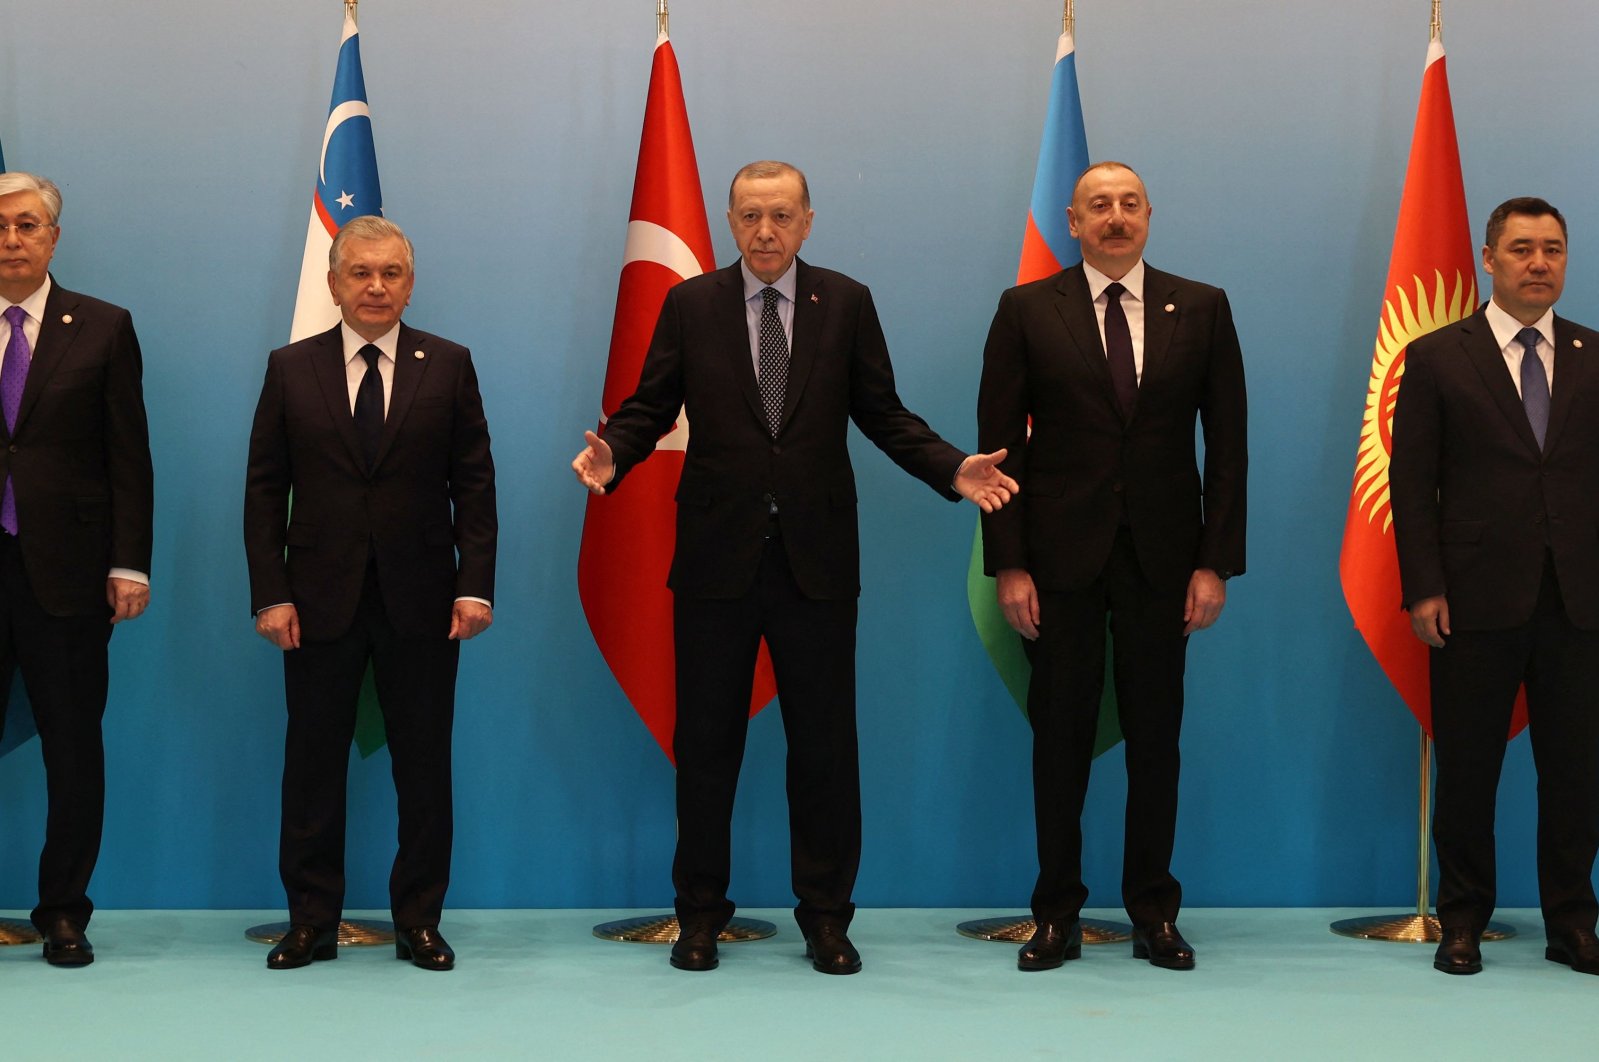 Dunia Turki menyiapkan dana investasi untuk mendorong integrasi ekonomi